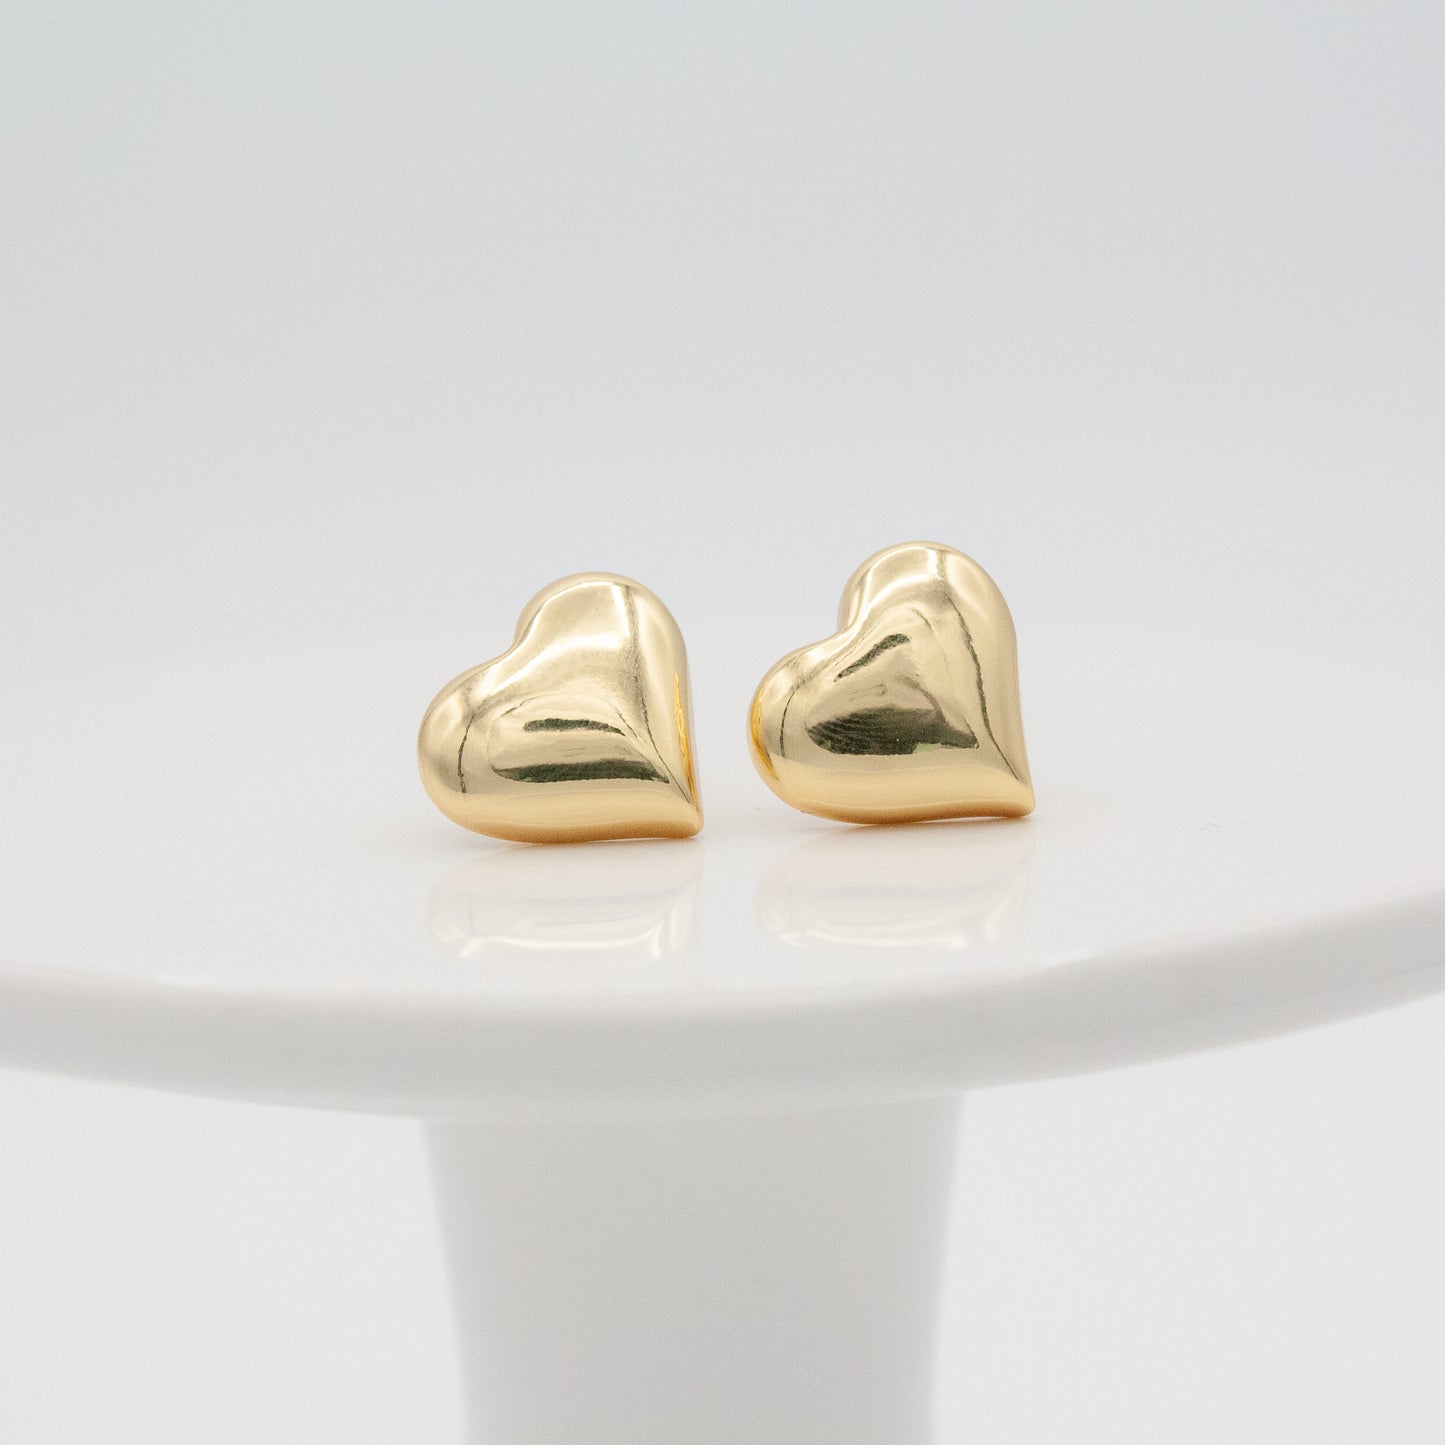 'Love Bubbles' Heart Earrings :: 24k Gold Filled